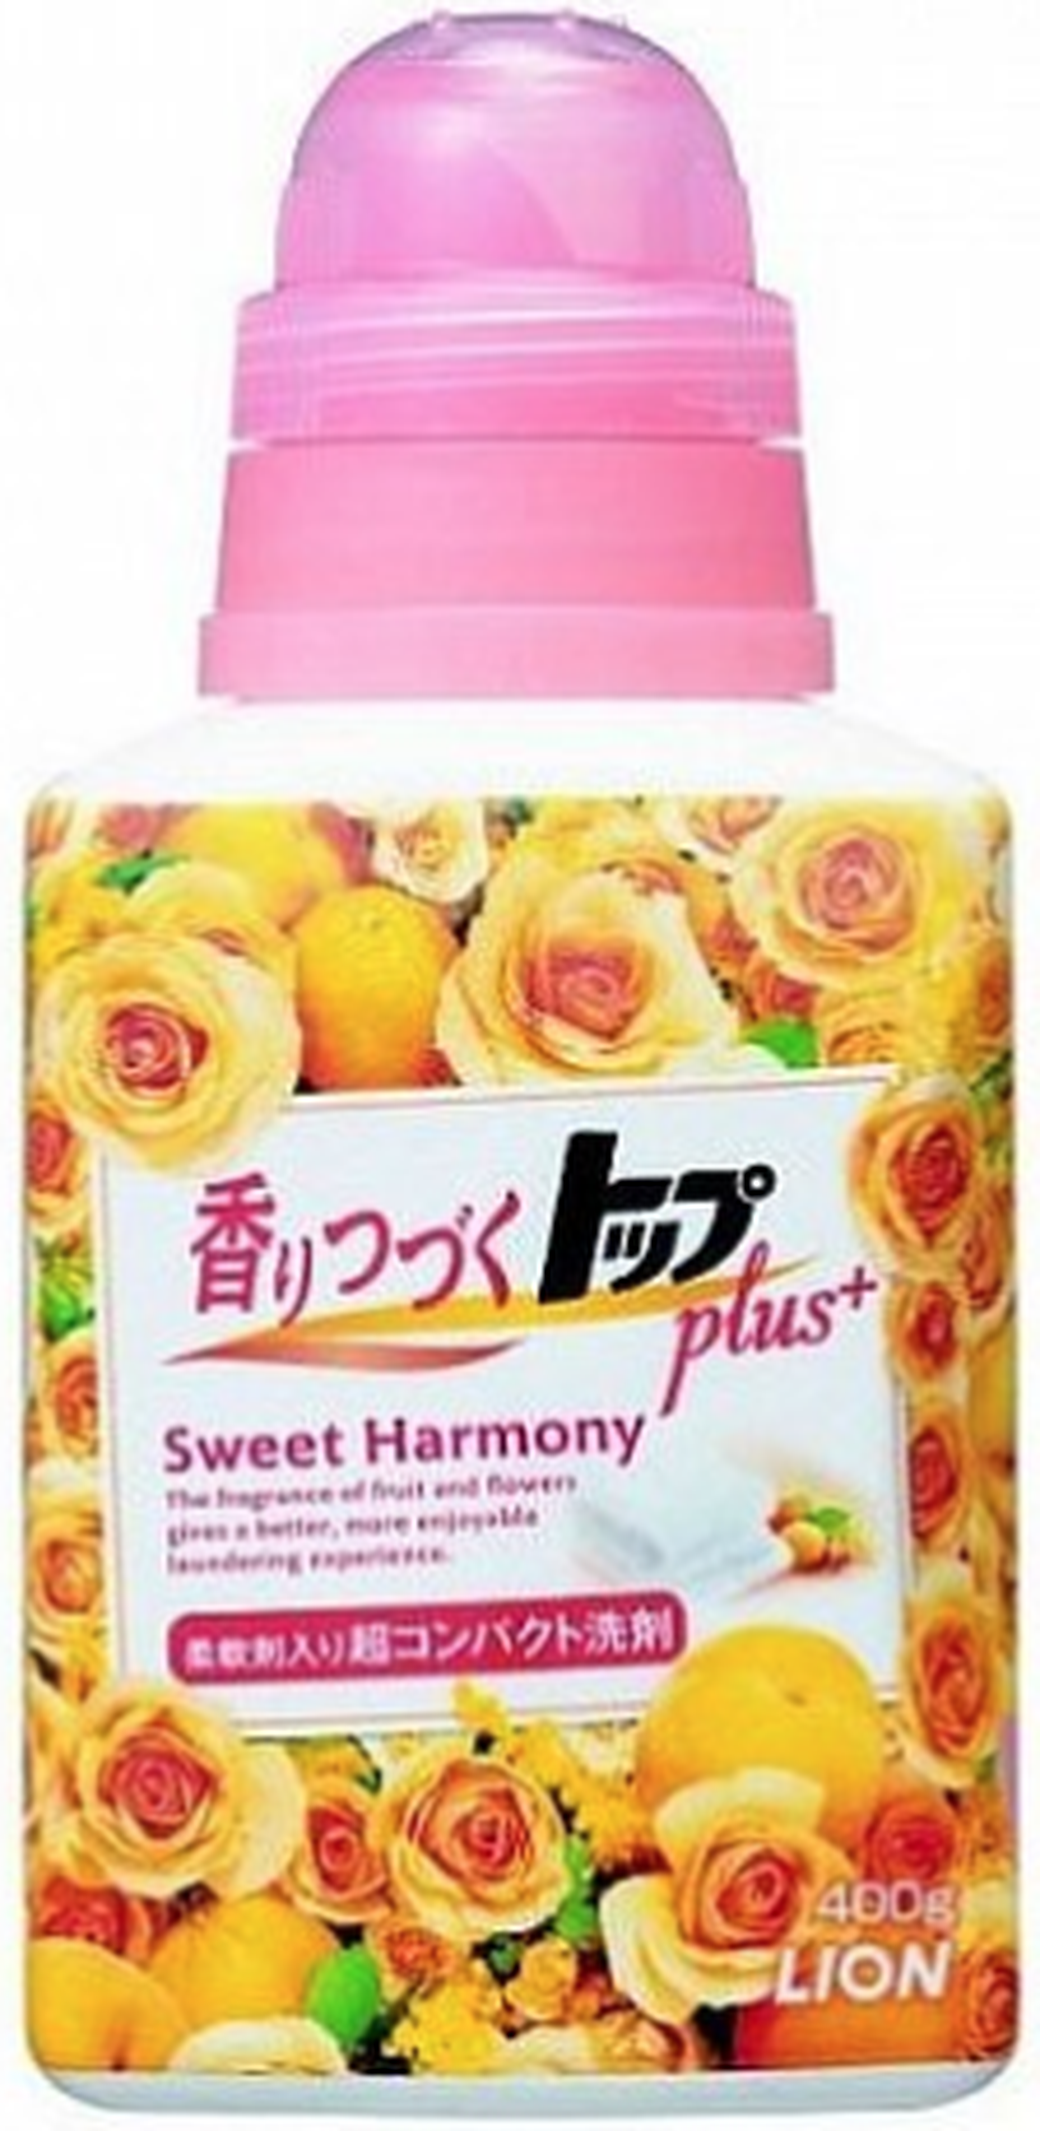 Жидкое средство для стирки LION Fragrance TOP Sweet Harmony сладкая гармония 400 мл фото